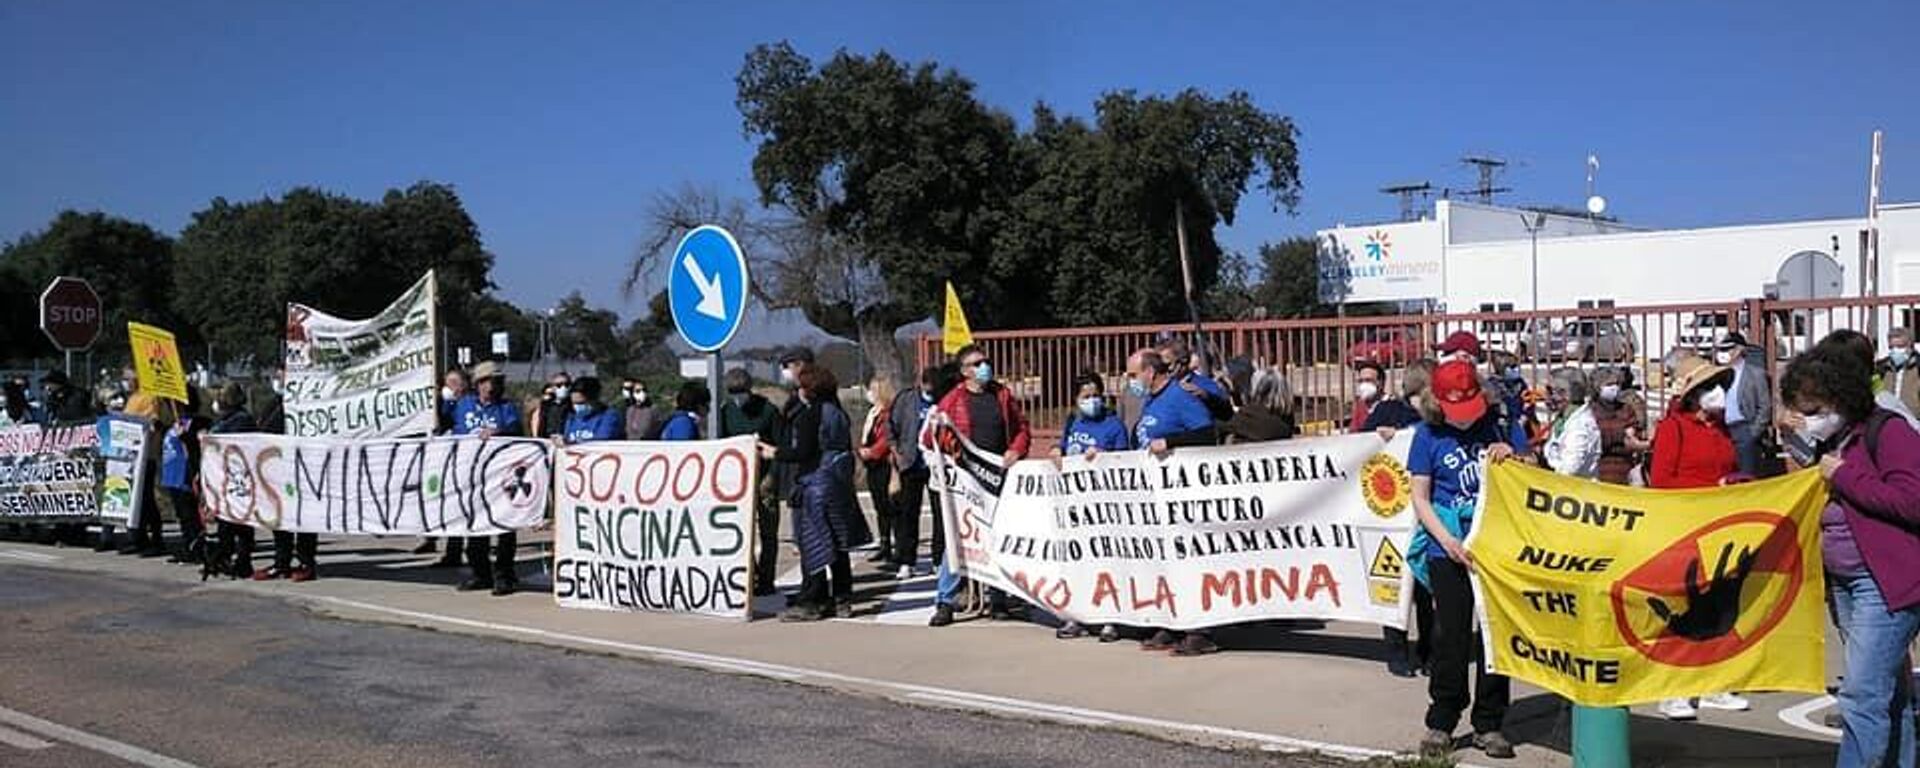 Protesta contra la mina de Retortillo (Salamanca) - Sputnik Mundo, 1920, 13.07.2021